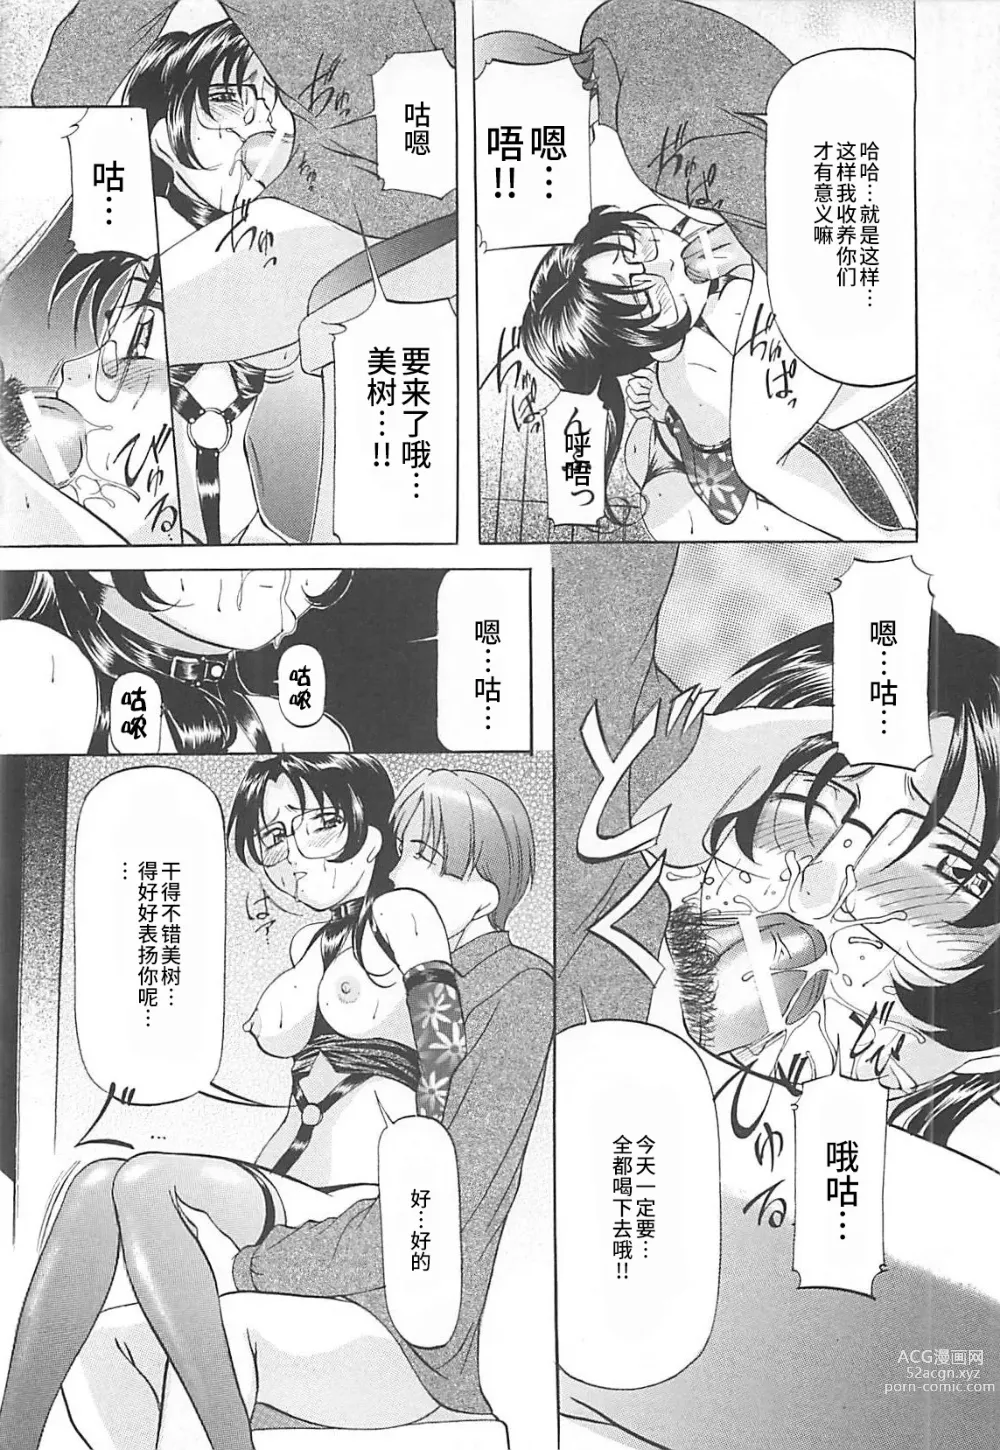 Page 153 of manga SM Koiuta